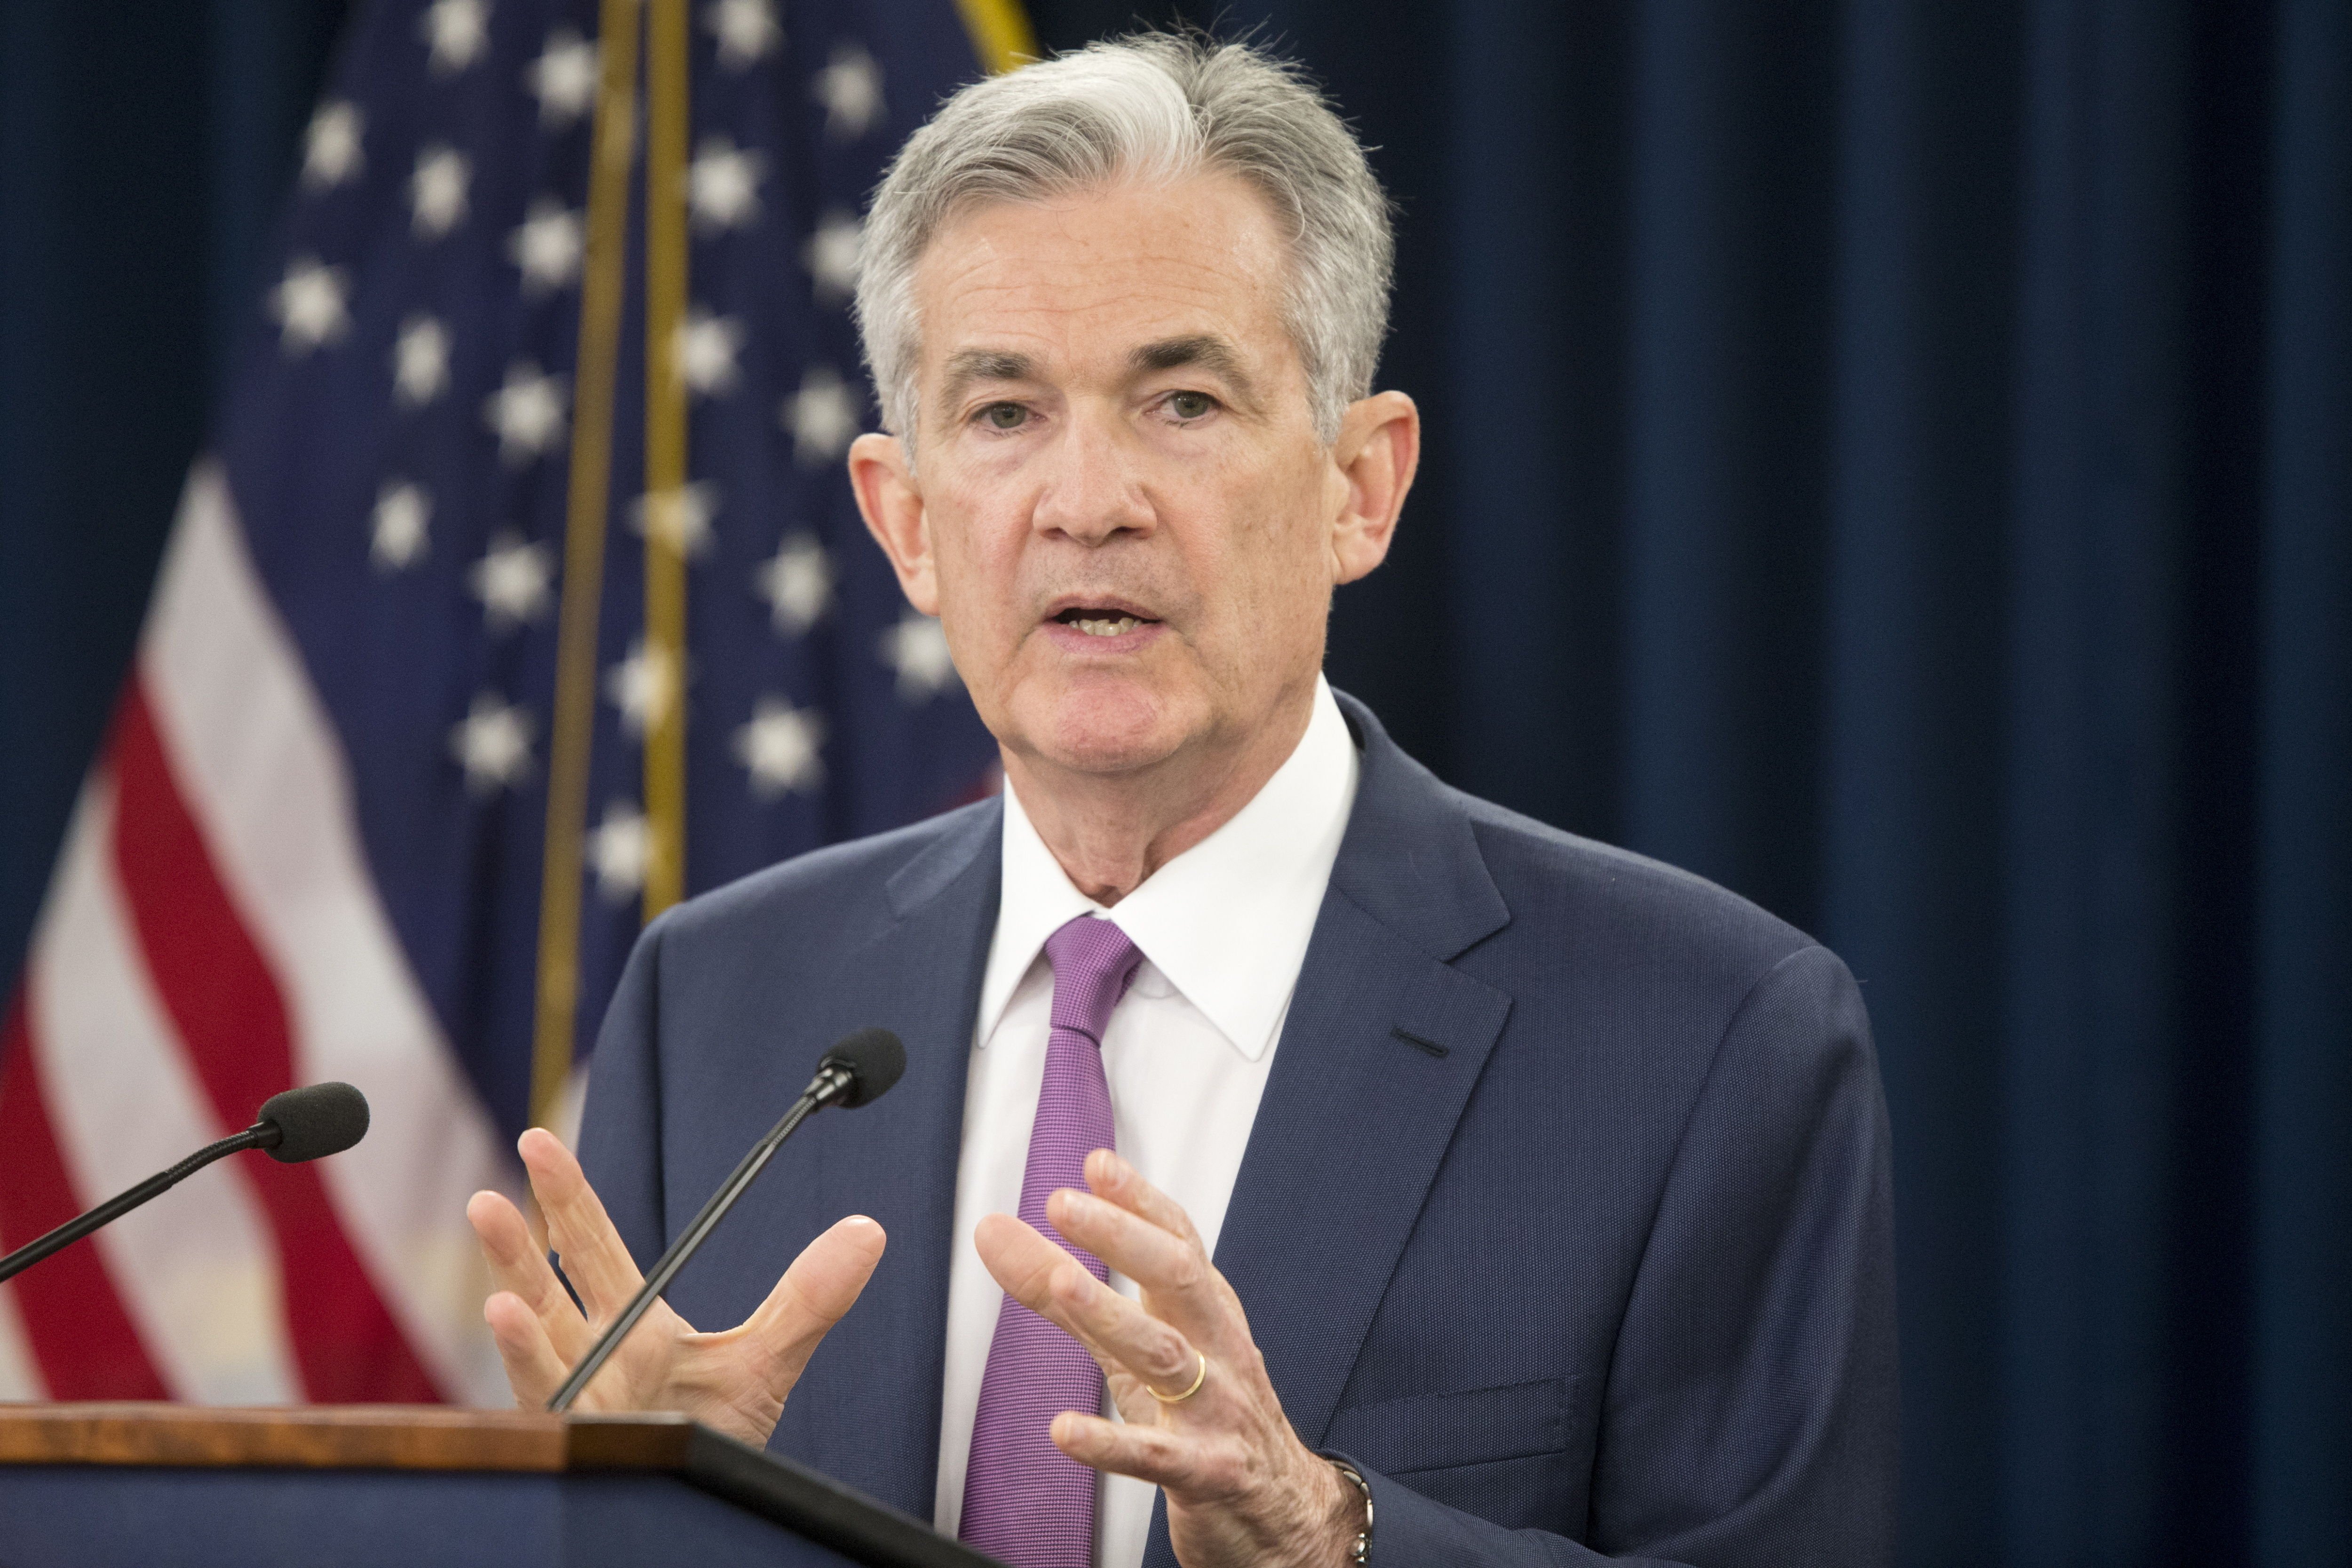 La Fed puja els tipus d'interès en 0,25 punts